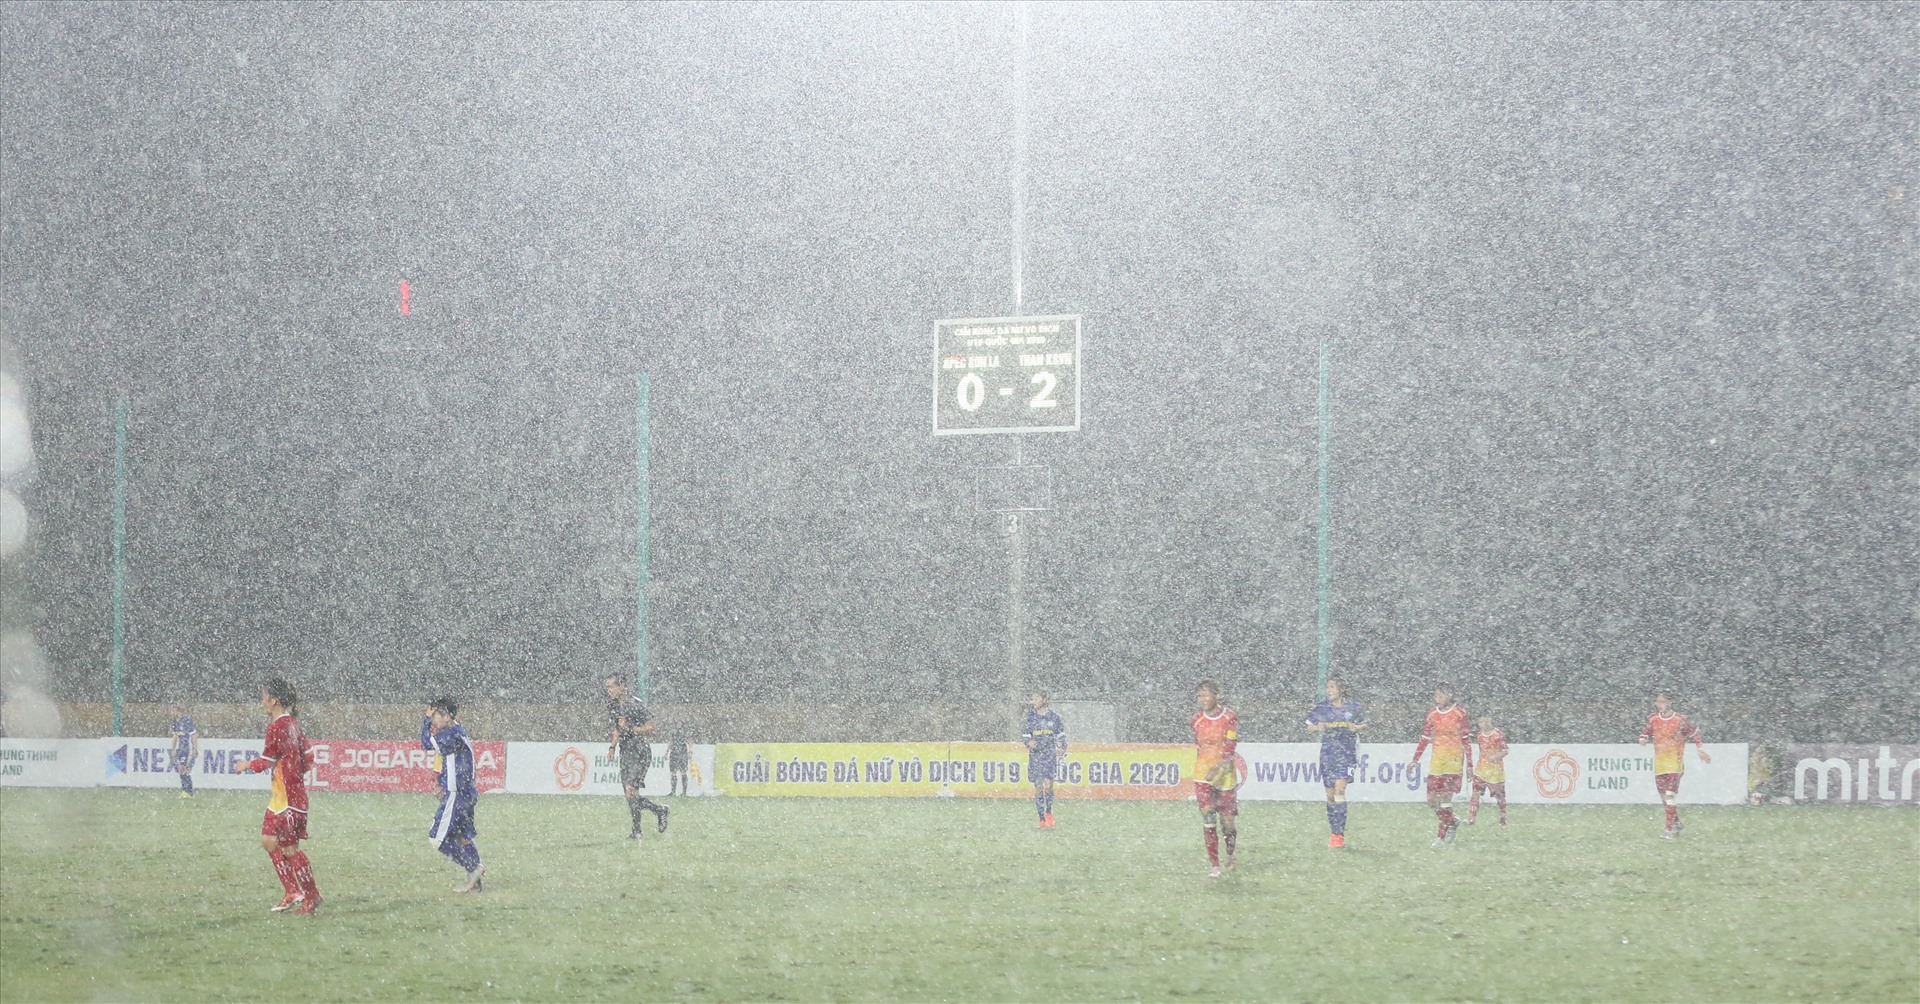 Trọng tài quyết định hoãn trận đấu vì trời mưa. Ở trận đấu diễn ra cùng giờ tại sân 1 giữa Hà Nam I và TPHCM cũng phải tạm hoãn.